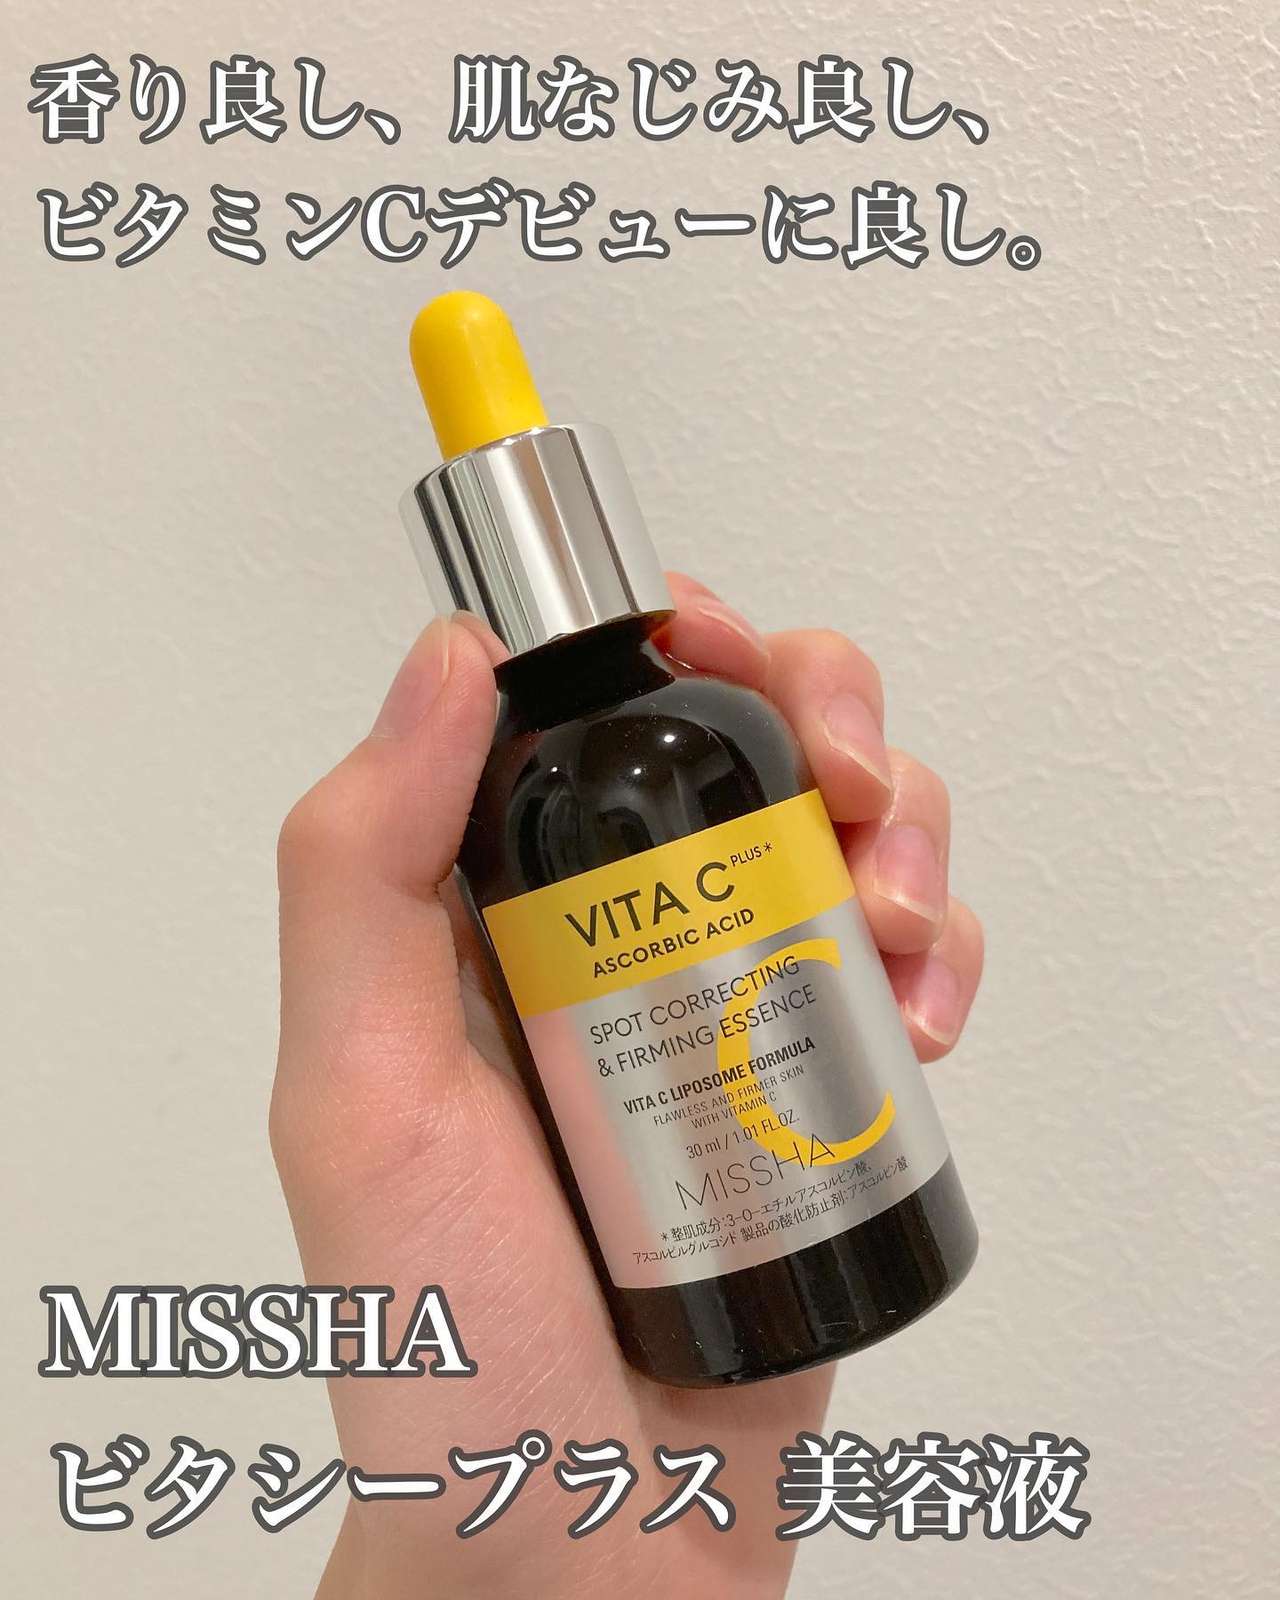 MISSHA VITA C 化粧水 美容液 TWICE サナ特典付き - 基礎化粧品